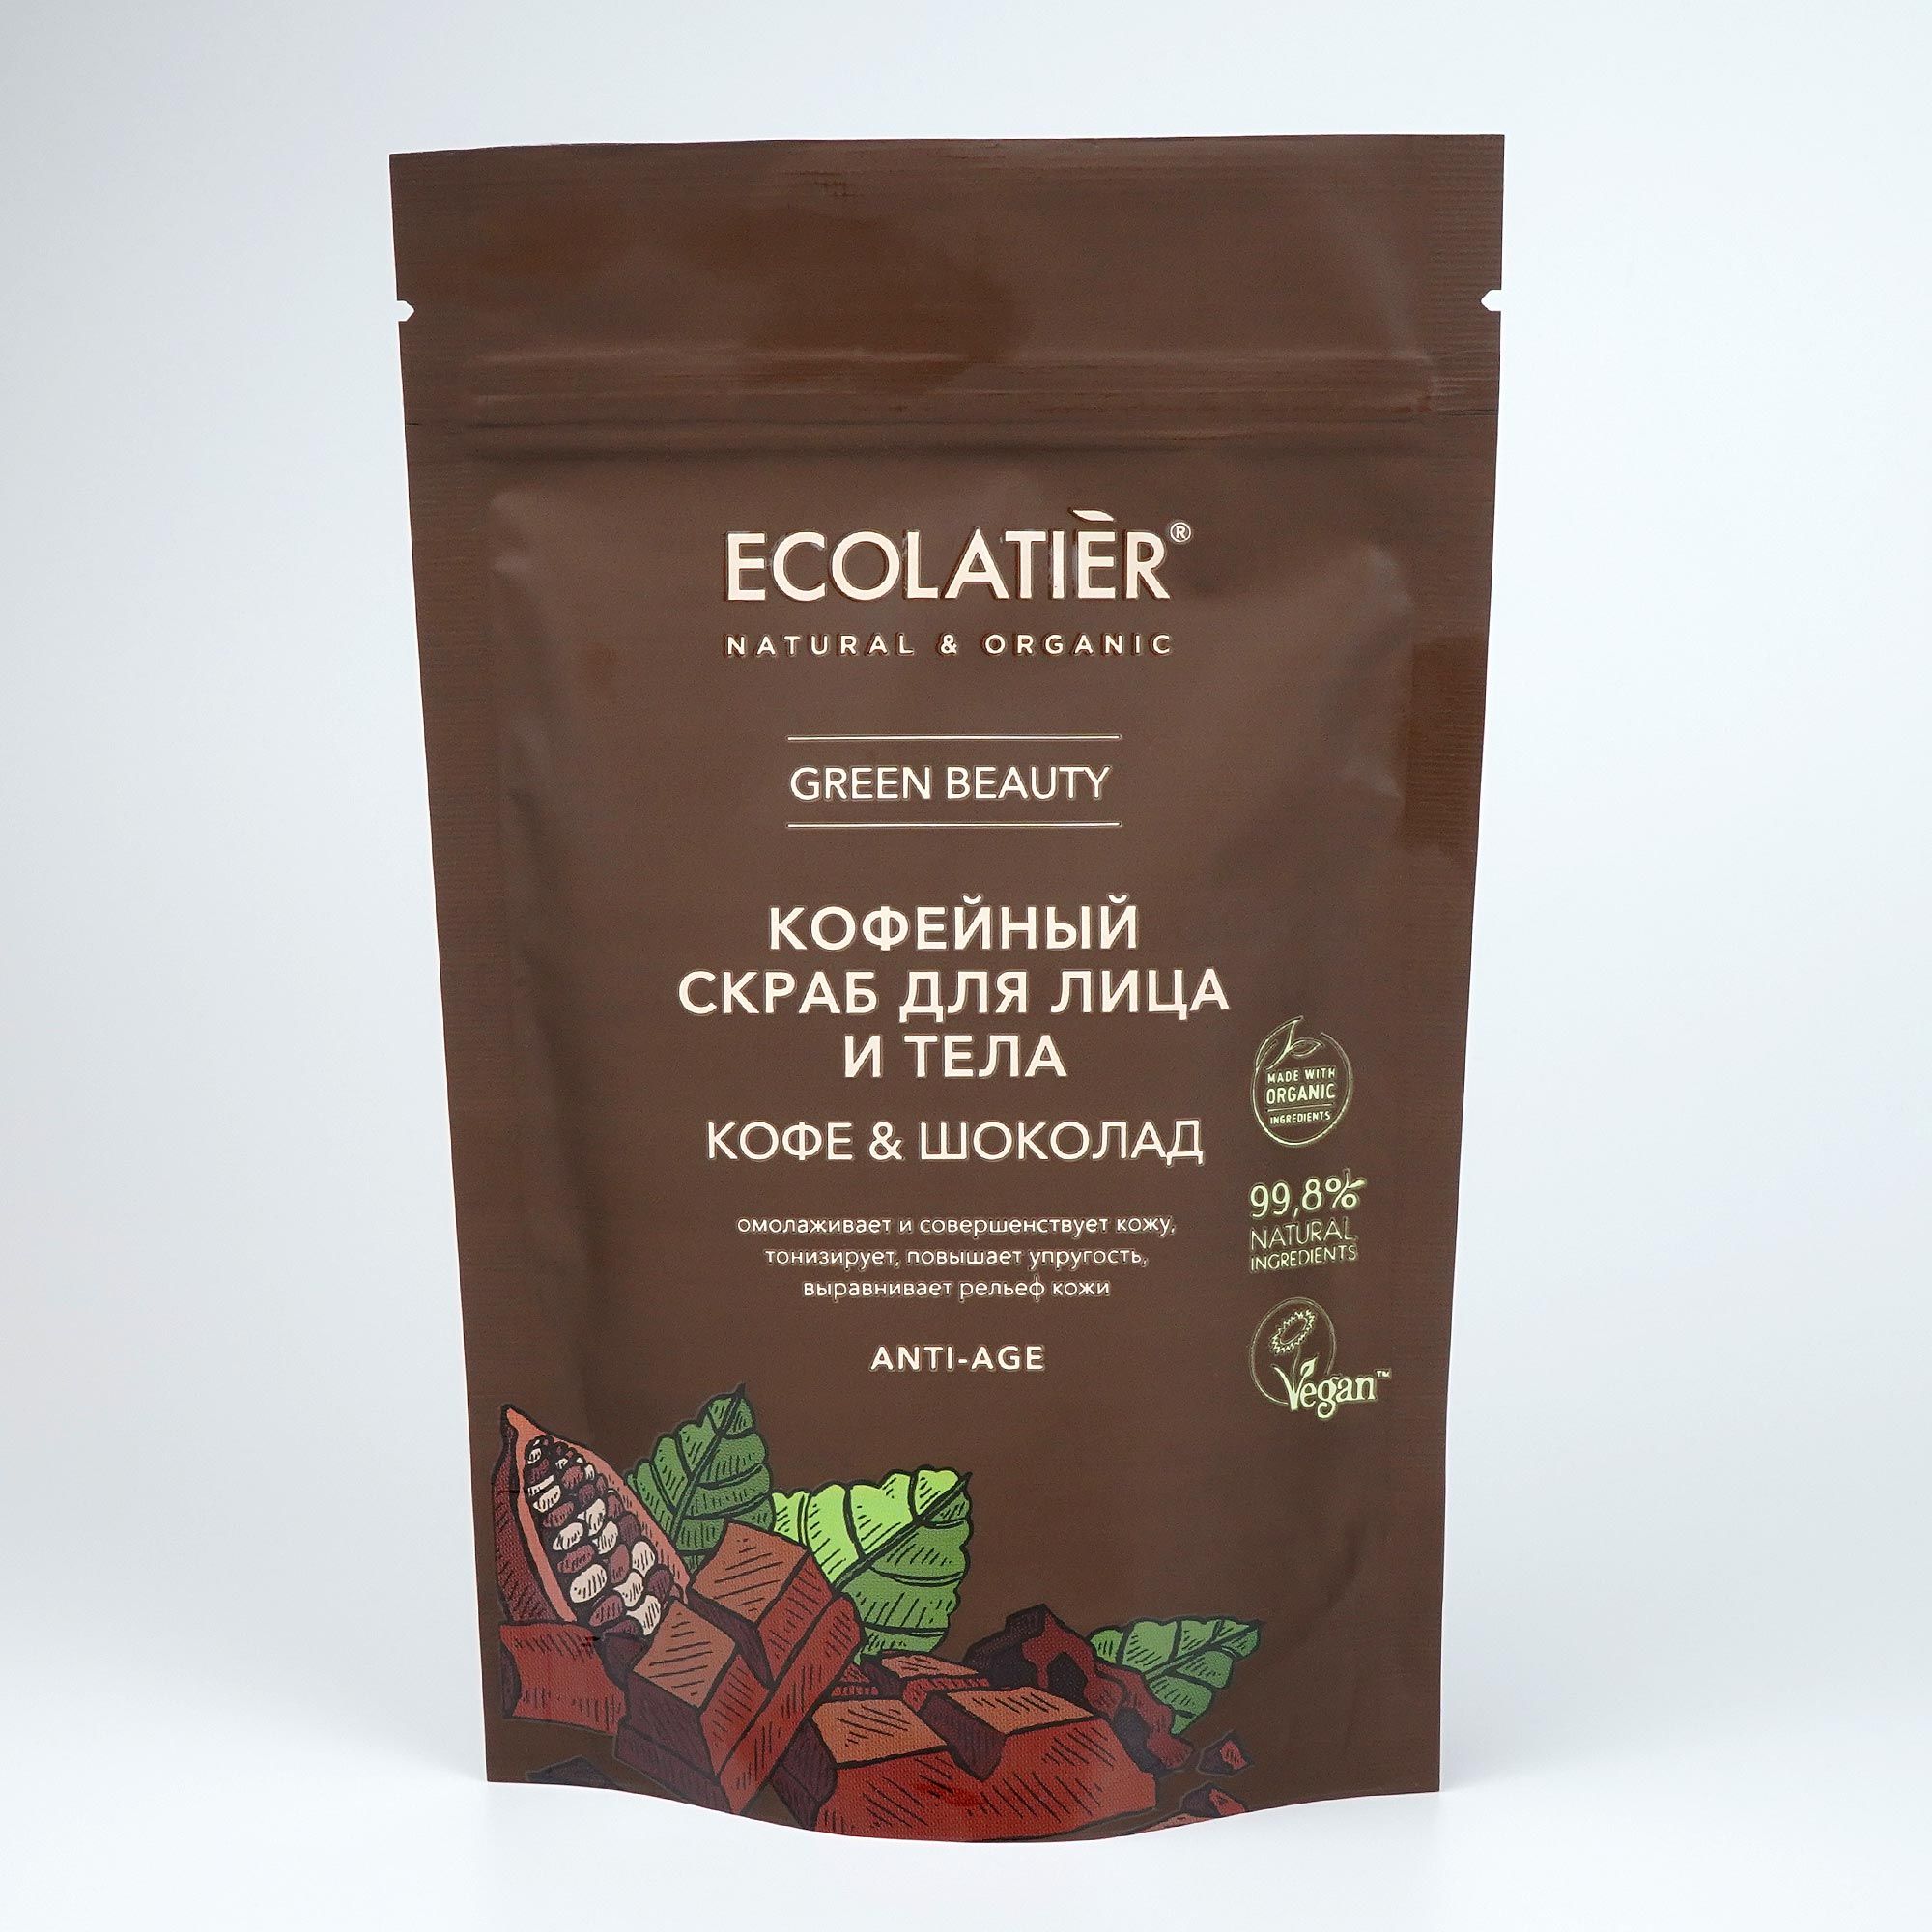 Скраб для лица и тела Кофе и шоколад Ecolatier 150 гр